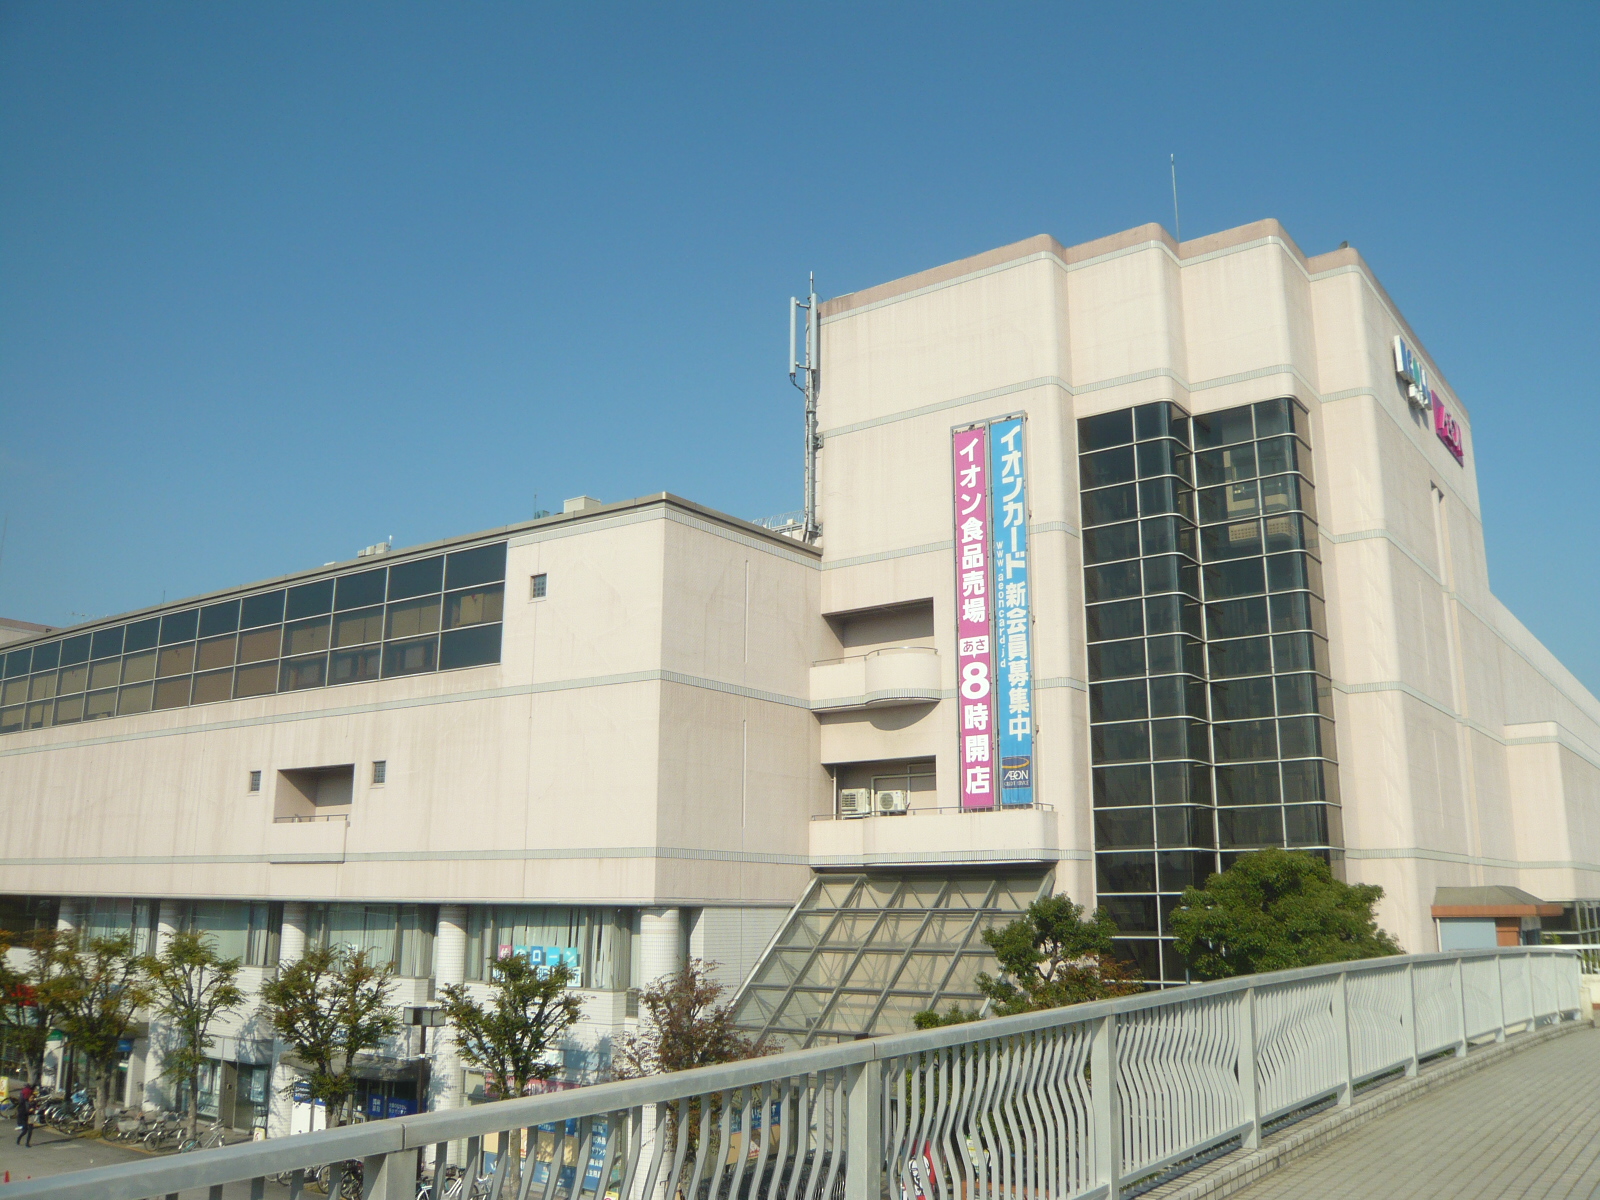 Shopping centre. Uniqlo Tondabayashi Ecole ・ 1215m until Rose store (shopping center)